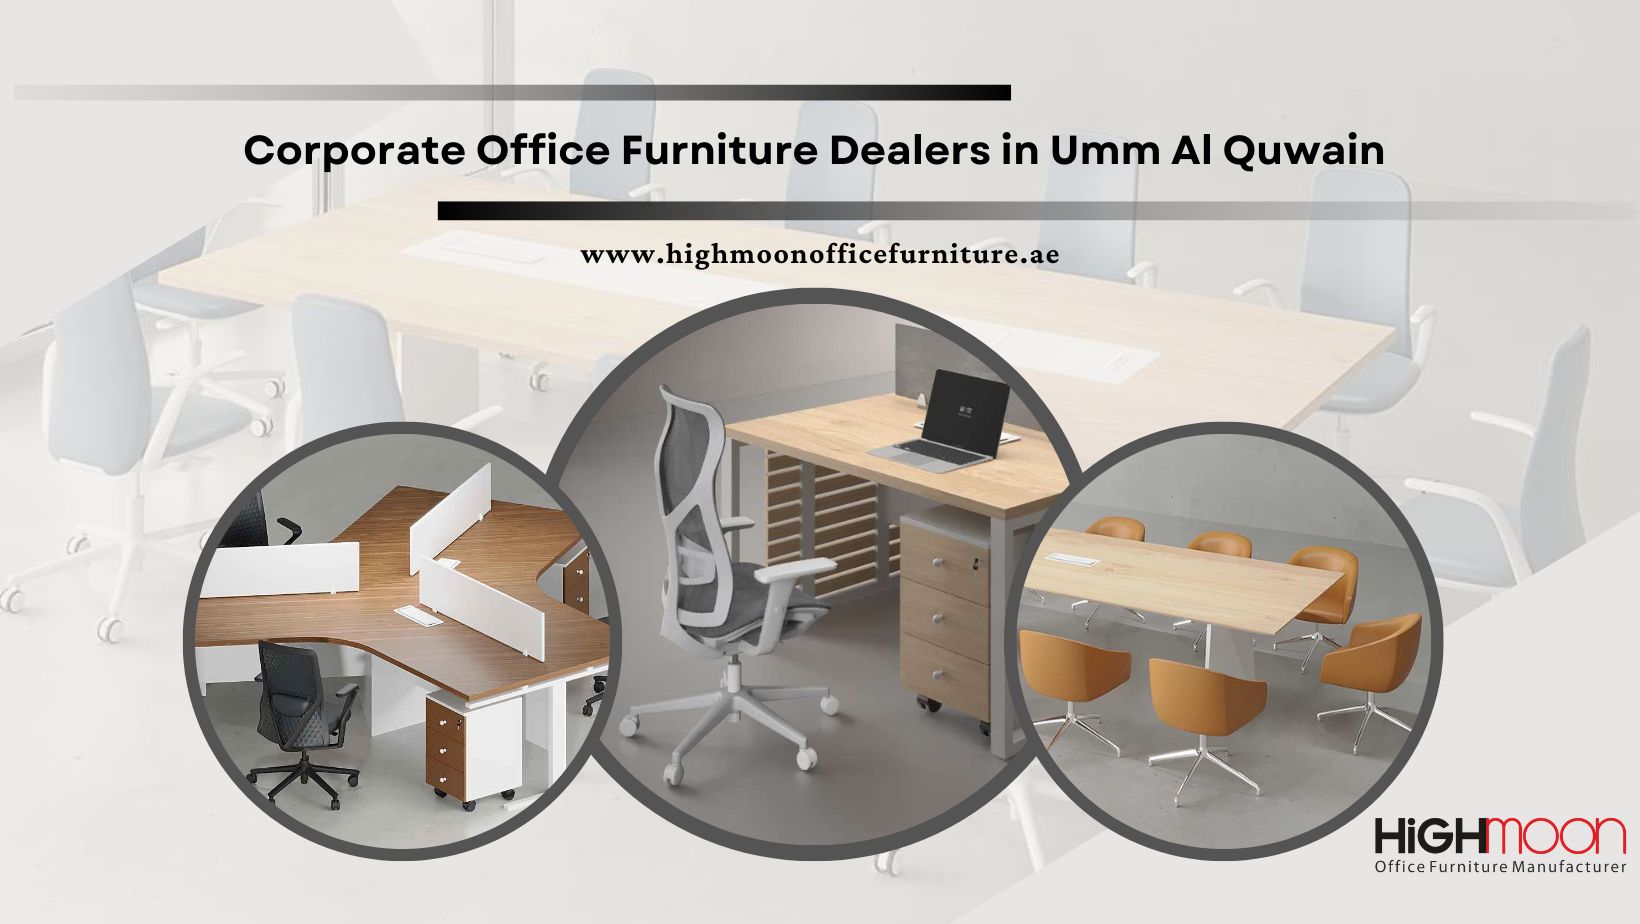 Corporate Office Furniture Dealers in Umm Al Quwain